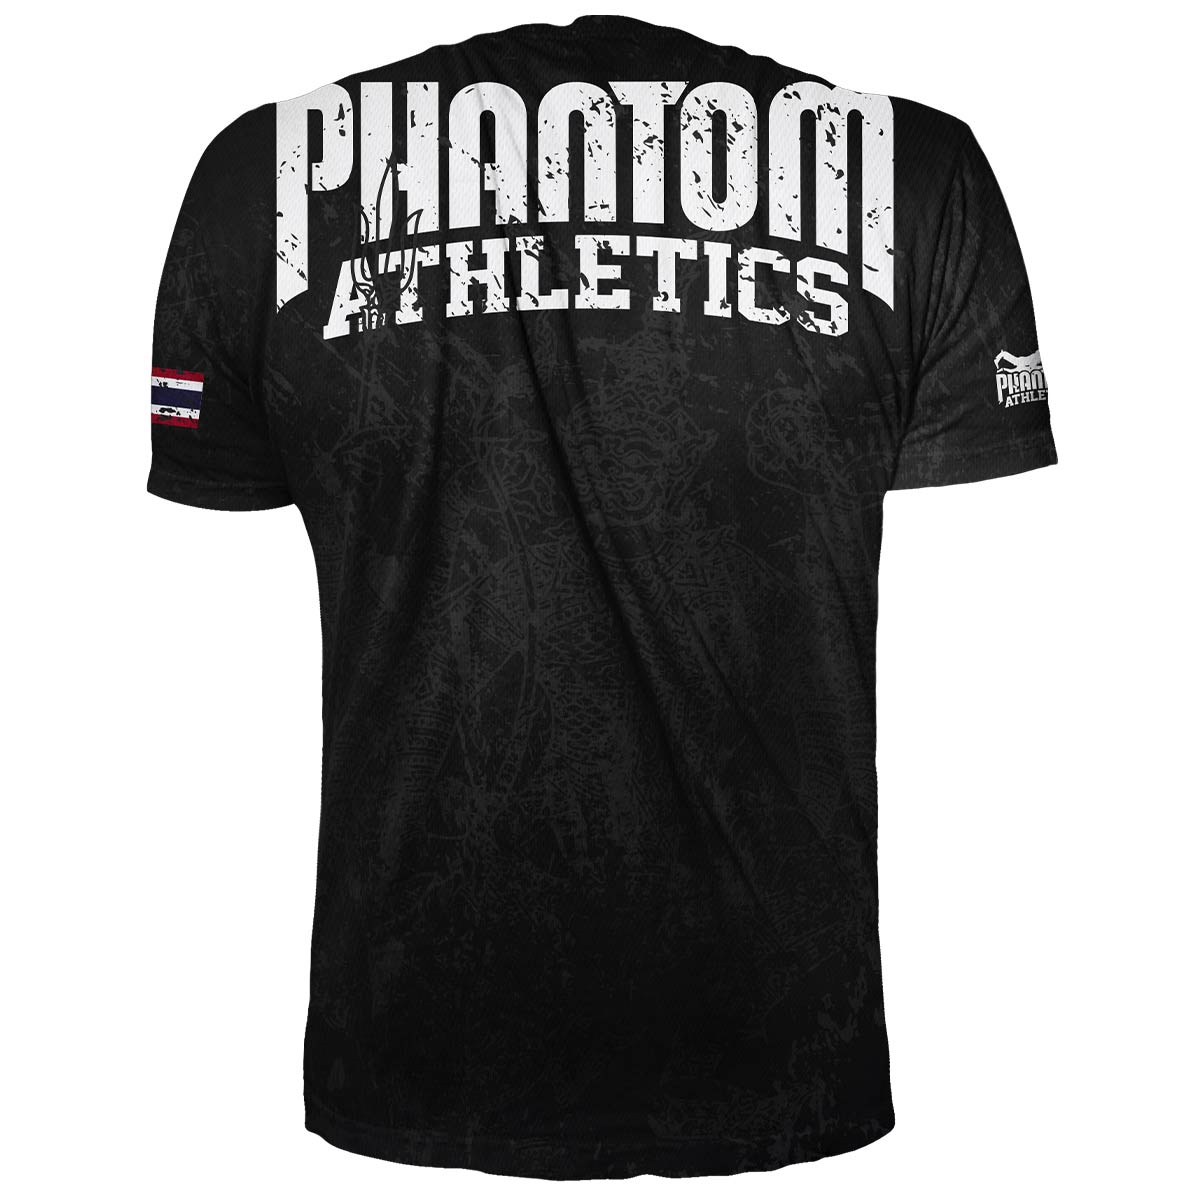 Phantom EVO Trainingsshirt im Muay Thai Design für Kampfsport Training. Mit thailändischer Schrift und Sak Yant Grafiken.